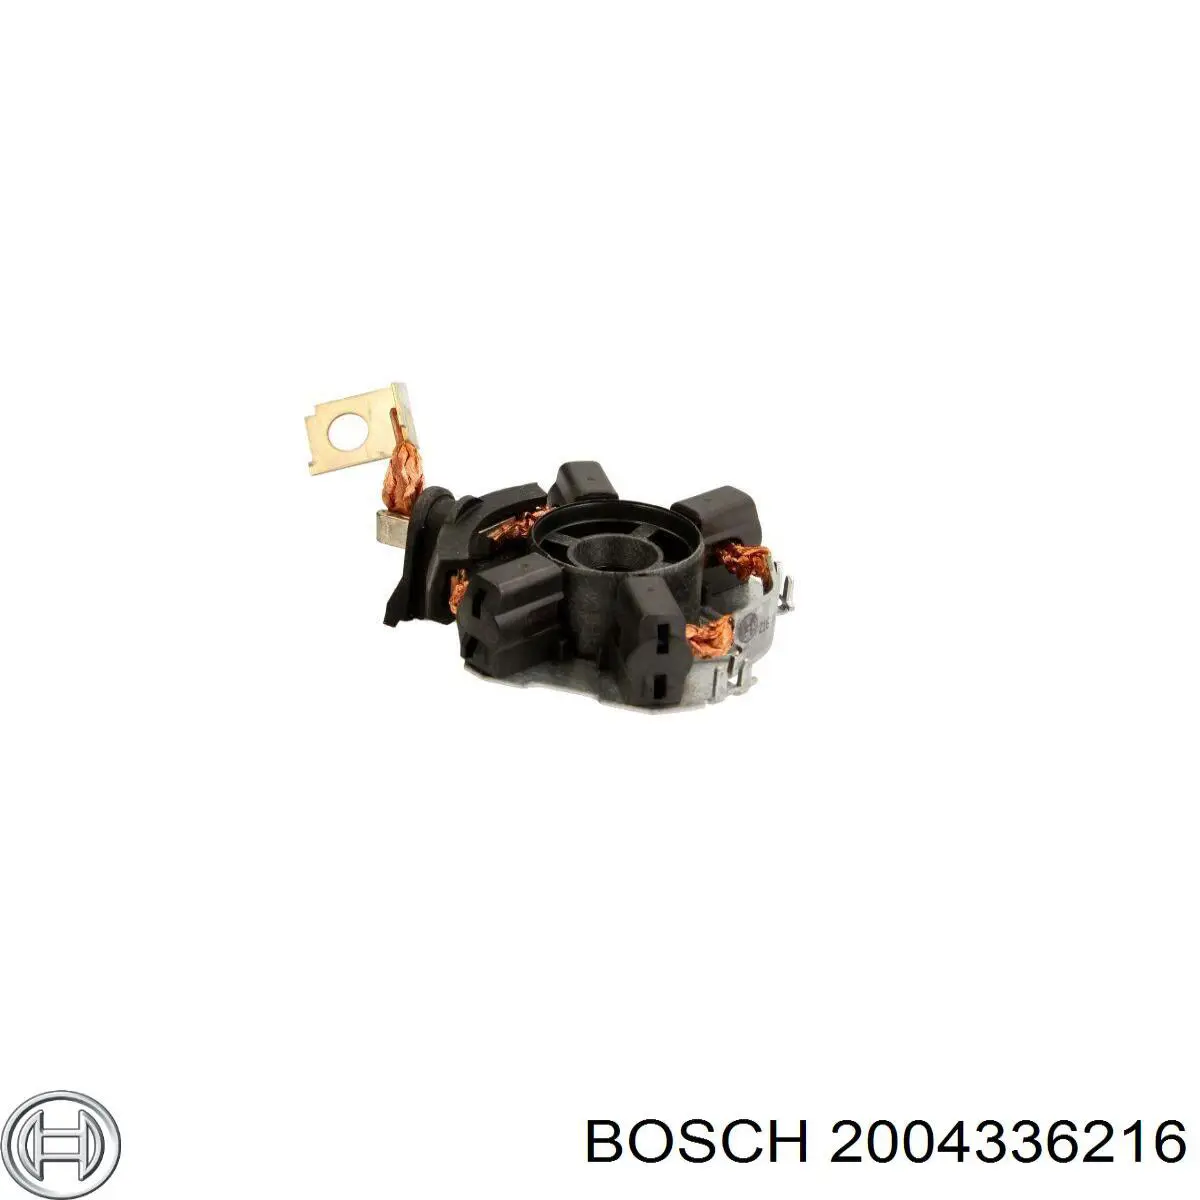 2004336216 Bosch щеткодеpжатель стартера